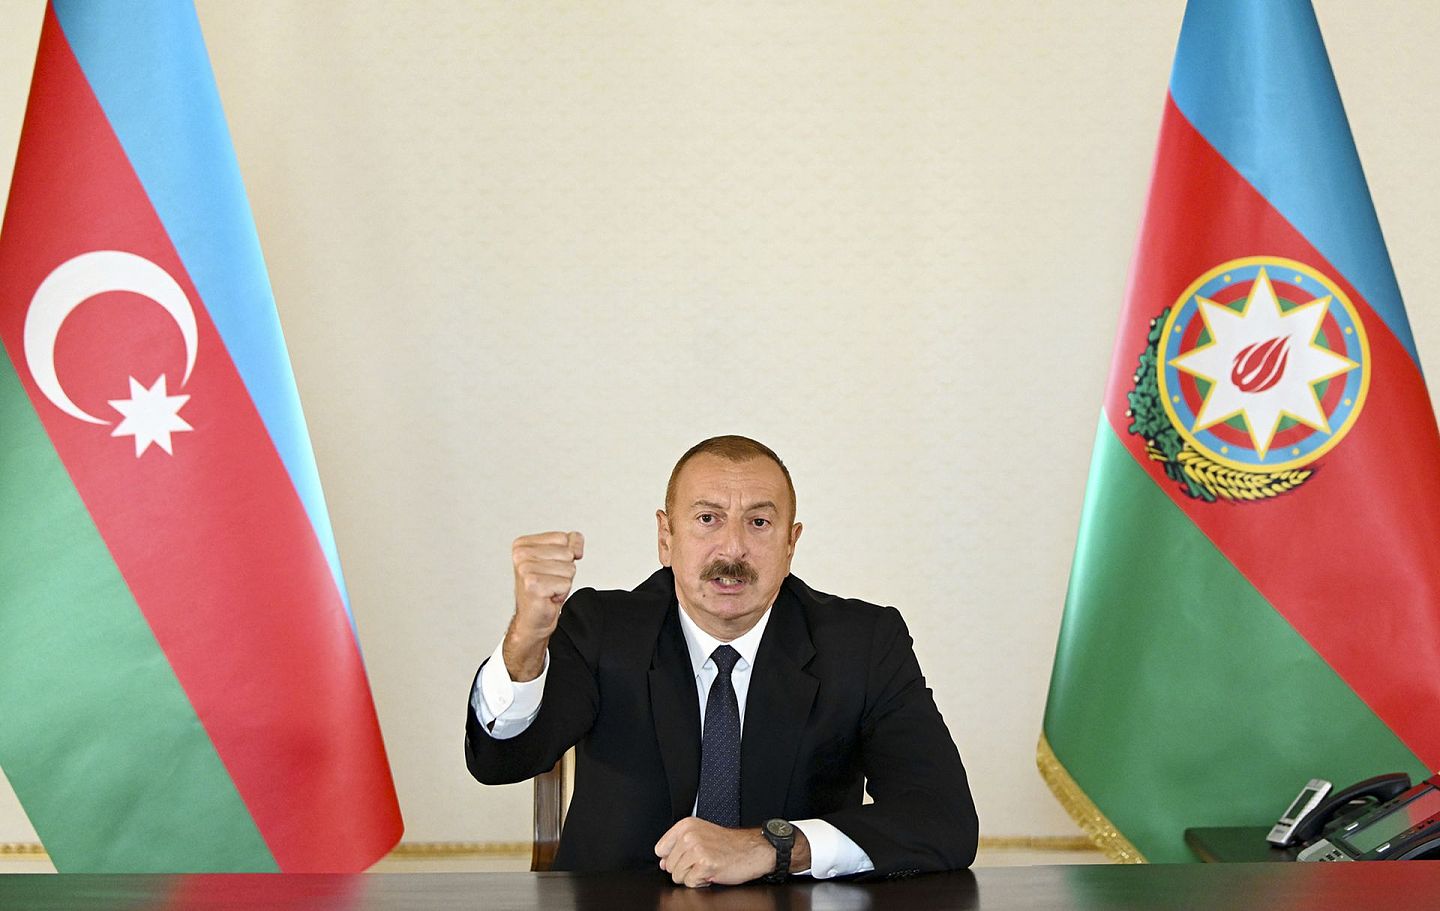 2020年9月27日，阿塞拜疆总统阿利耶夫（Ilham Aliyev）在总统办公室对全国发表电视讲话。在谈话中阿利耶夫号召民众团结一心，并称胜利必将属于阿塞拜疆。显然，来自土耳其的鼎力支持，让巴库当局的底气要比埃里温方面强势不少。（AP）